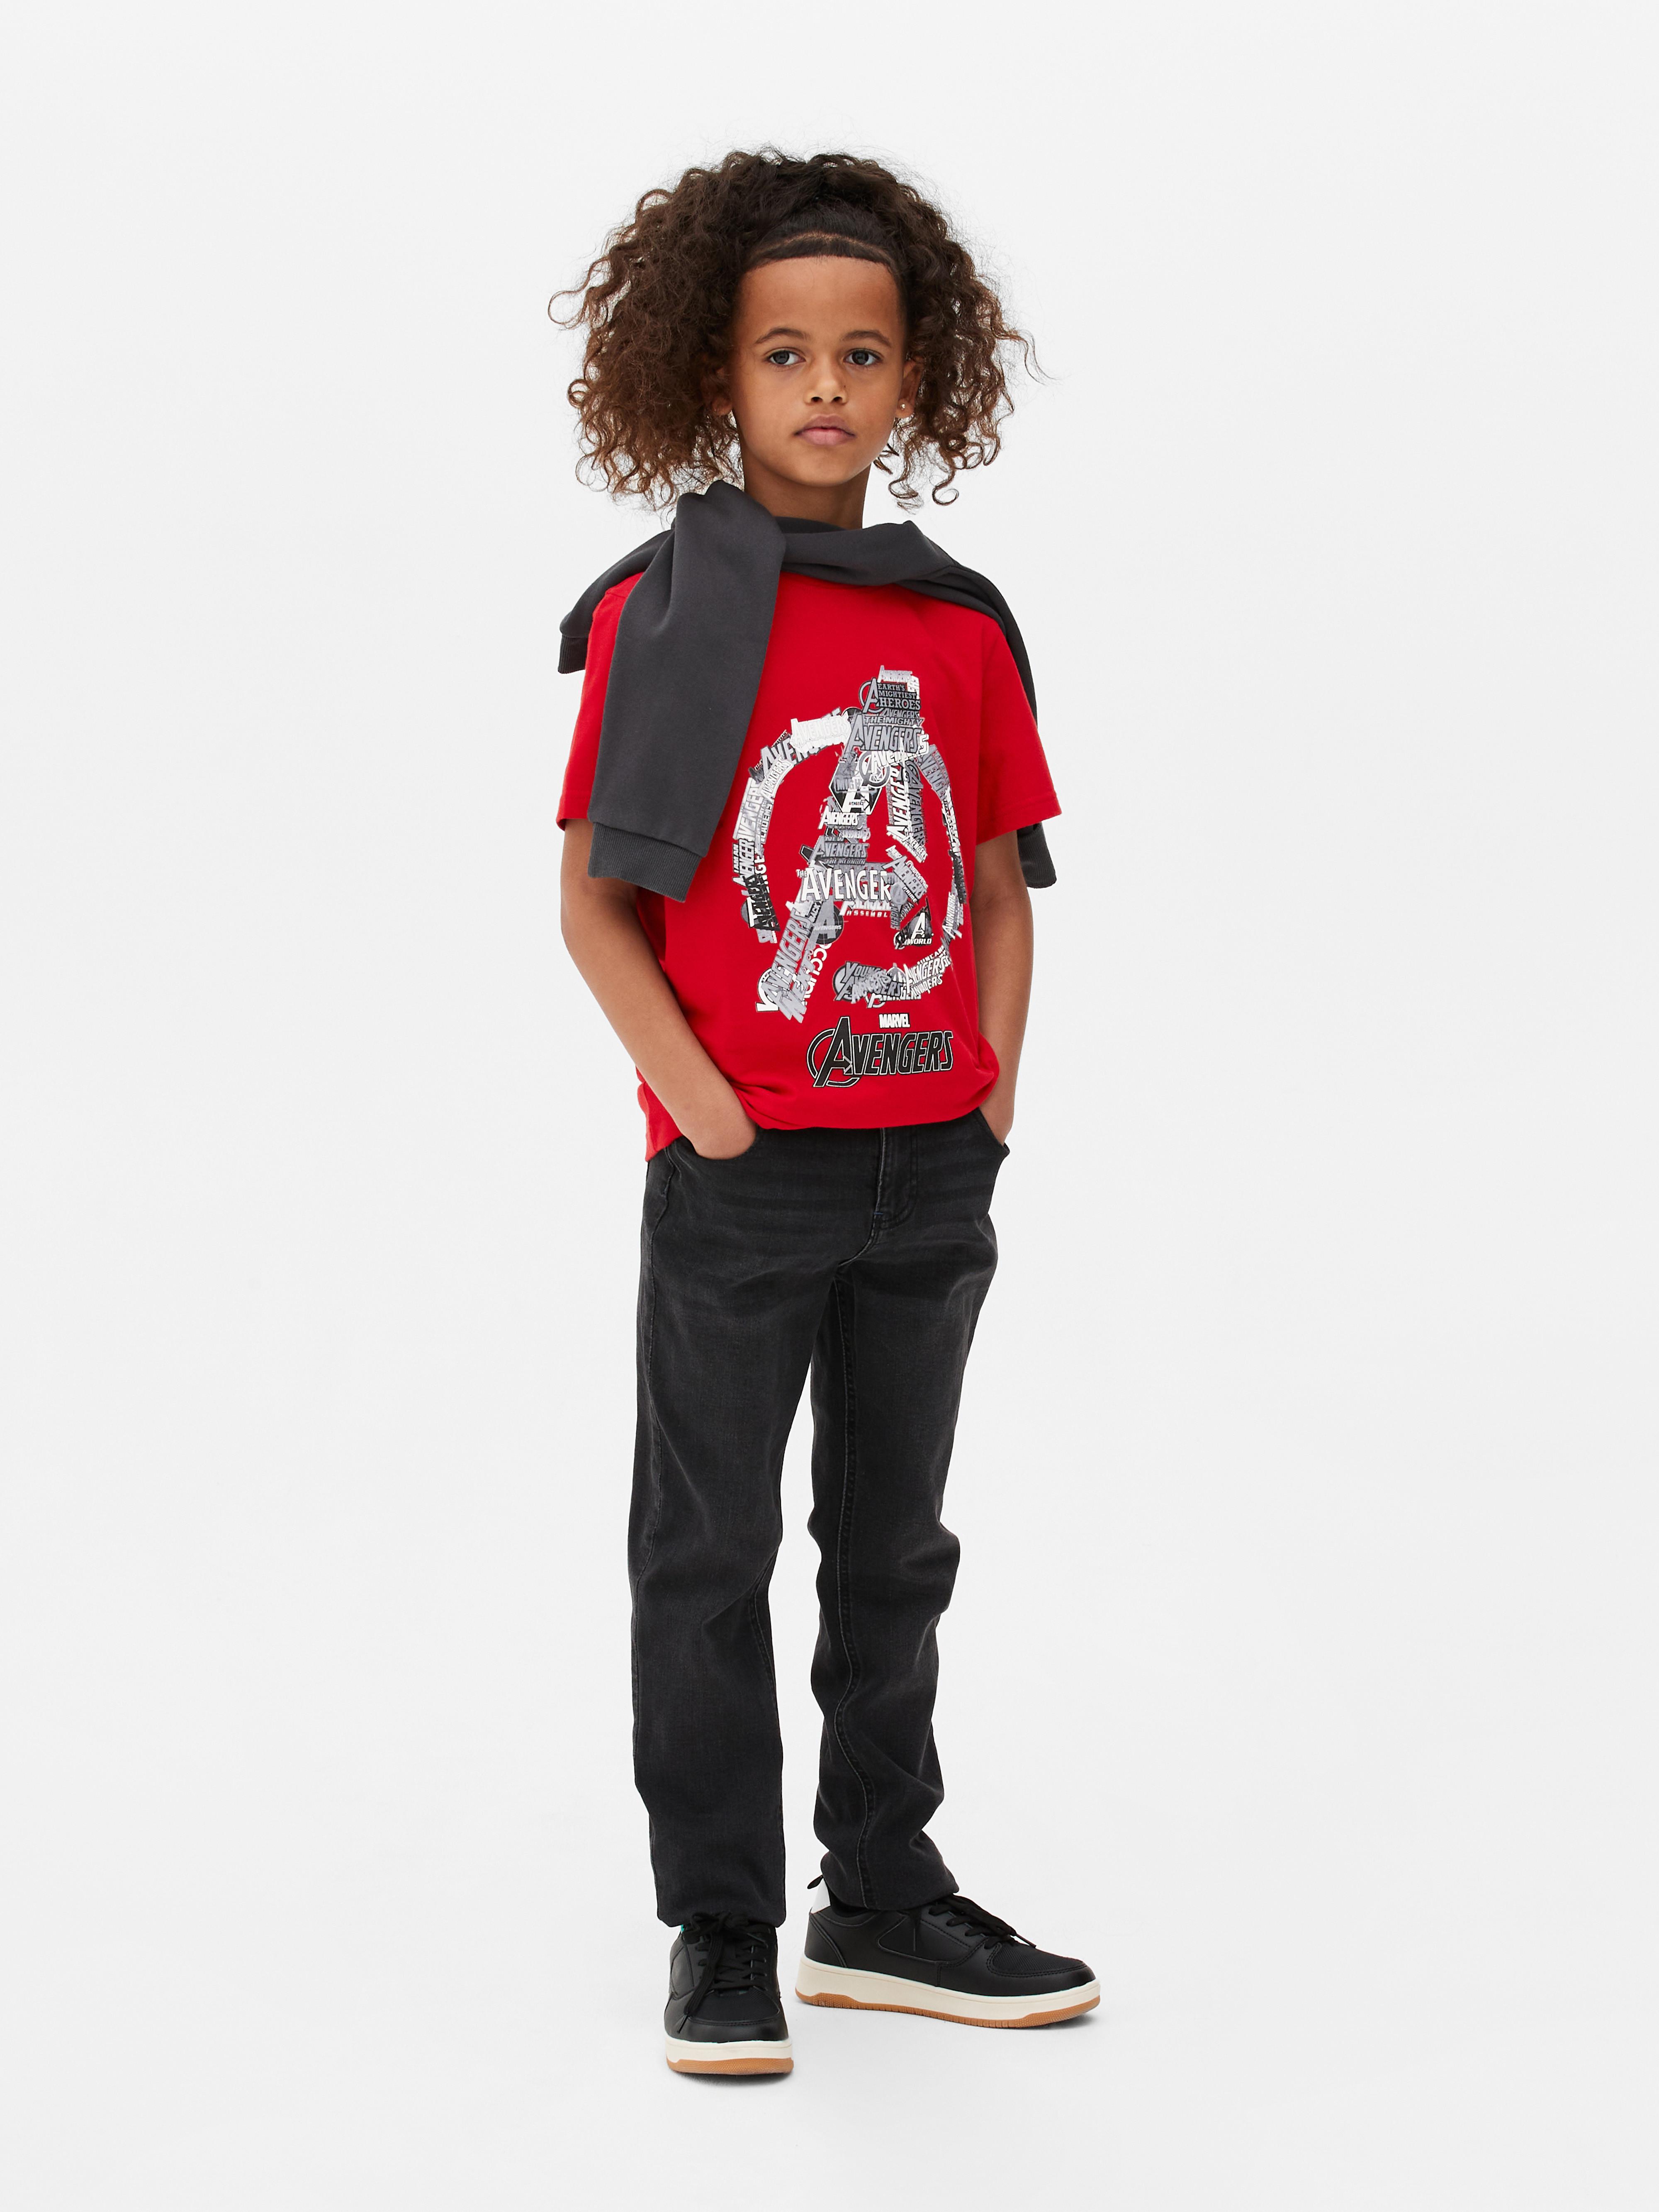 Tops y camisetas para niños gráficos, lisos y estampados | Primark